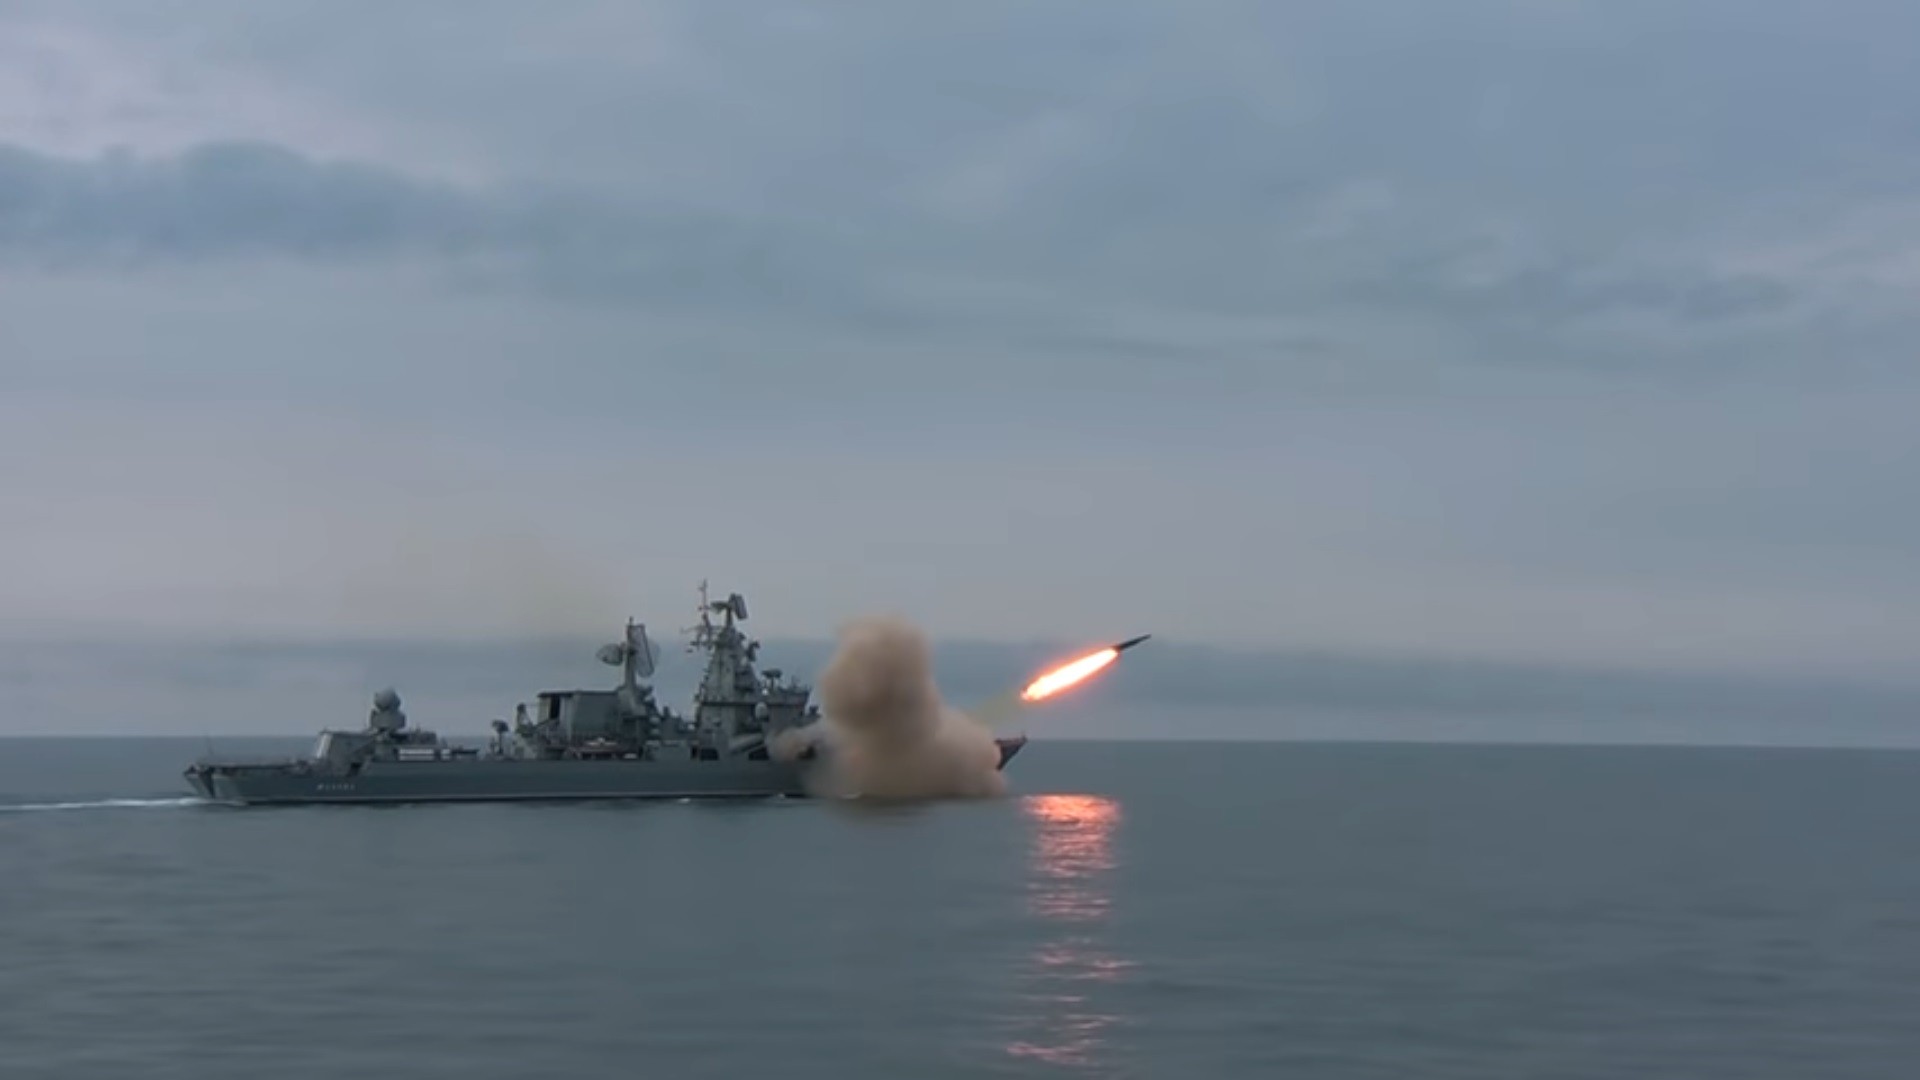 Strzelanie rakiety P-500 „Bazalt” z krążownika „Moskwa” 30 kwietnia 2021 r. Fot. mil.ru